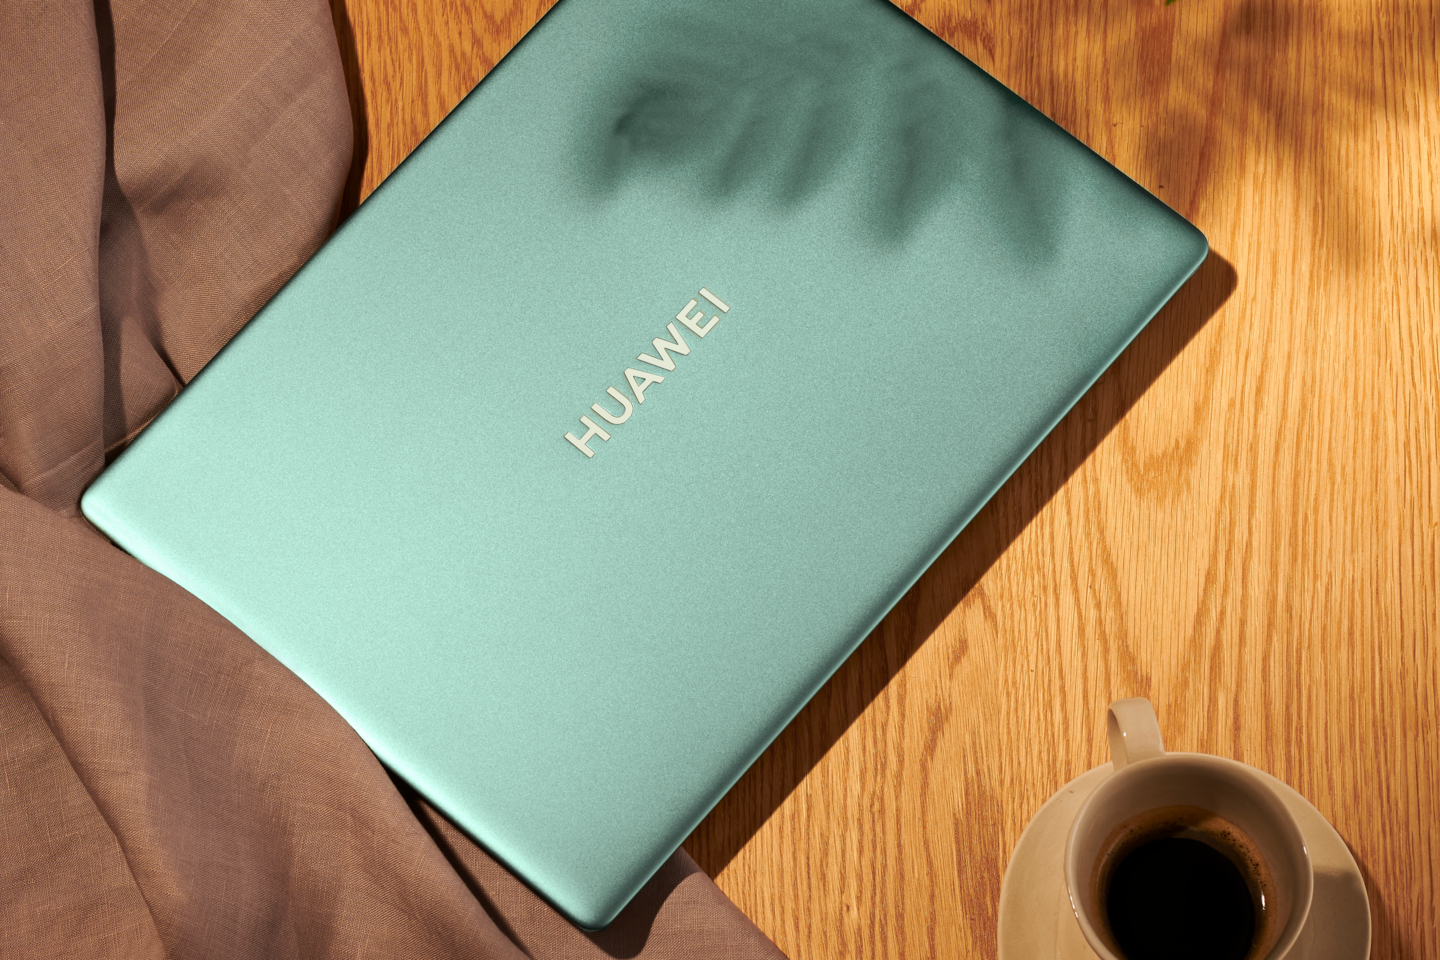 Nepasiklysti tarp dienos darbų padės itin galingais techniniais parametrais pasižymintis „Huawei MateBook 14s“.